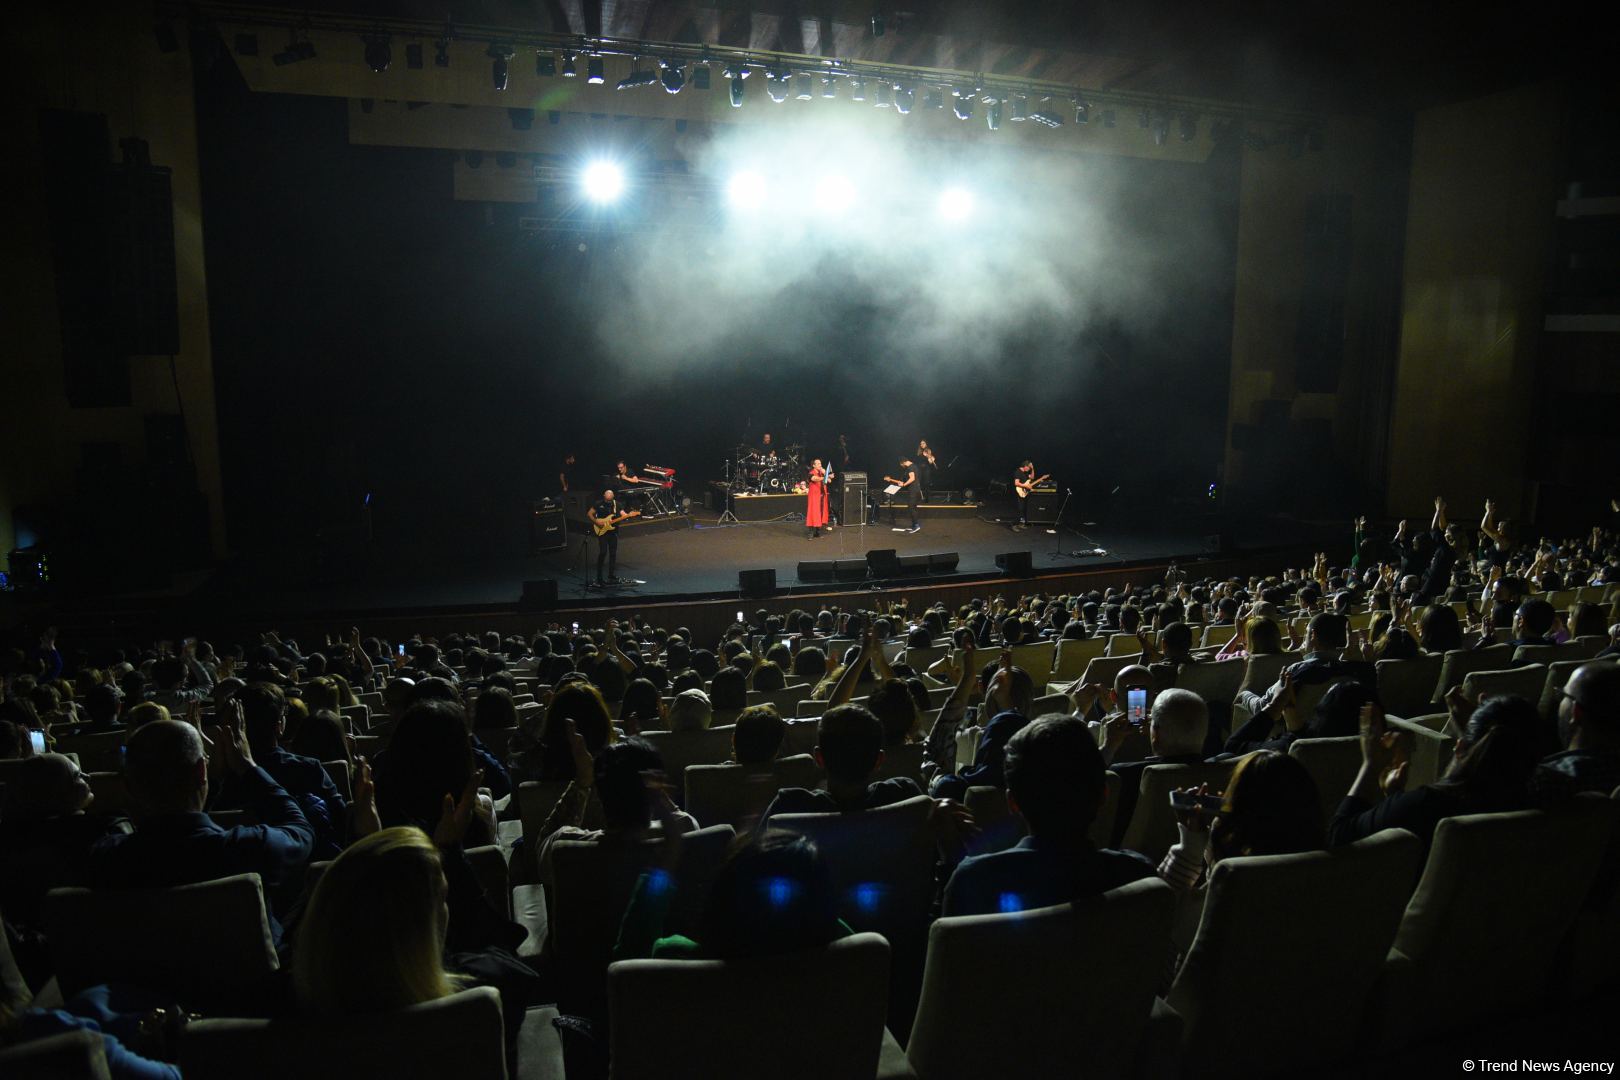 Турецкая звезда Кырач отметил два юбилея в Баку. Кульминацией стала песня Рашида Бейбутова  (ВИДЕО, ФОТО)